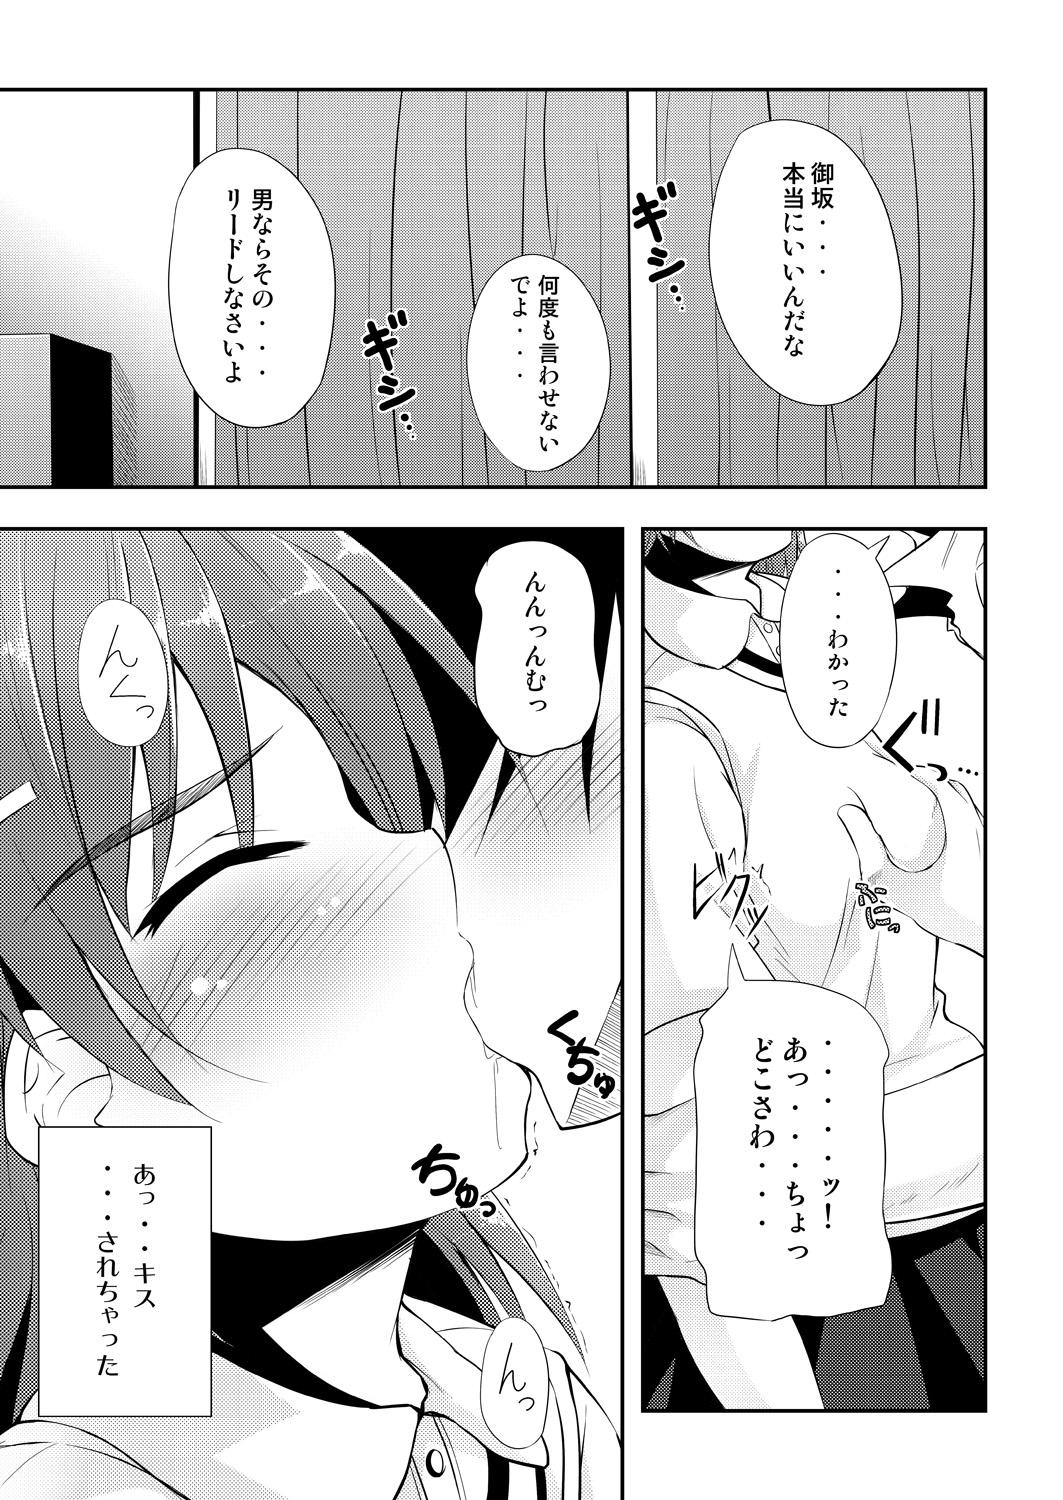 Tiny Tits BIRIBIRI Study - Toaru kagaku no railgun Bokep - Page 4